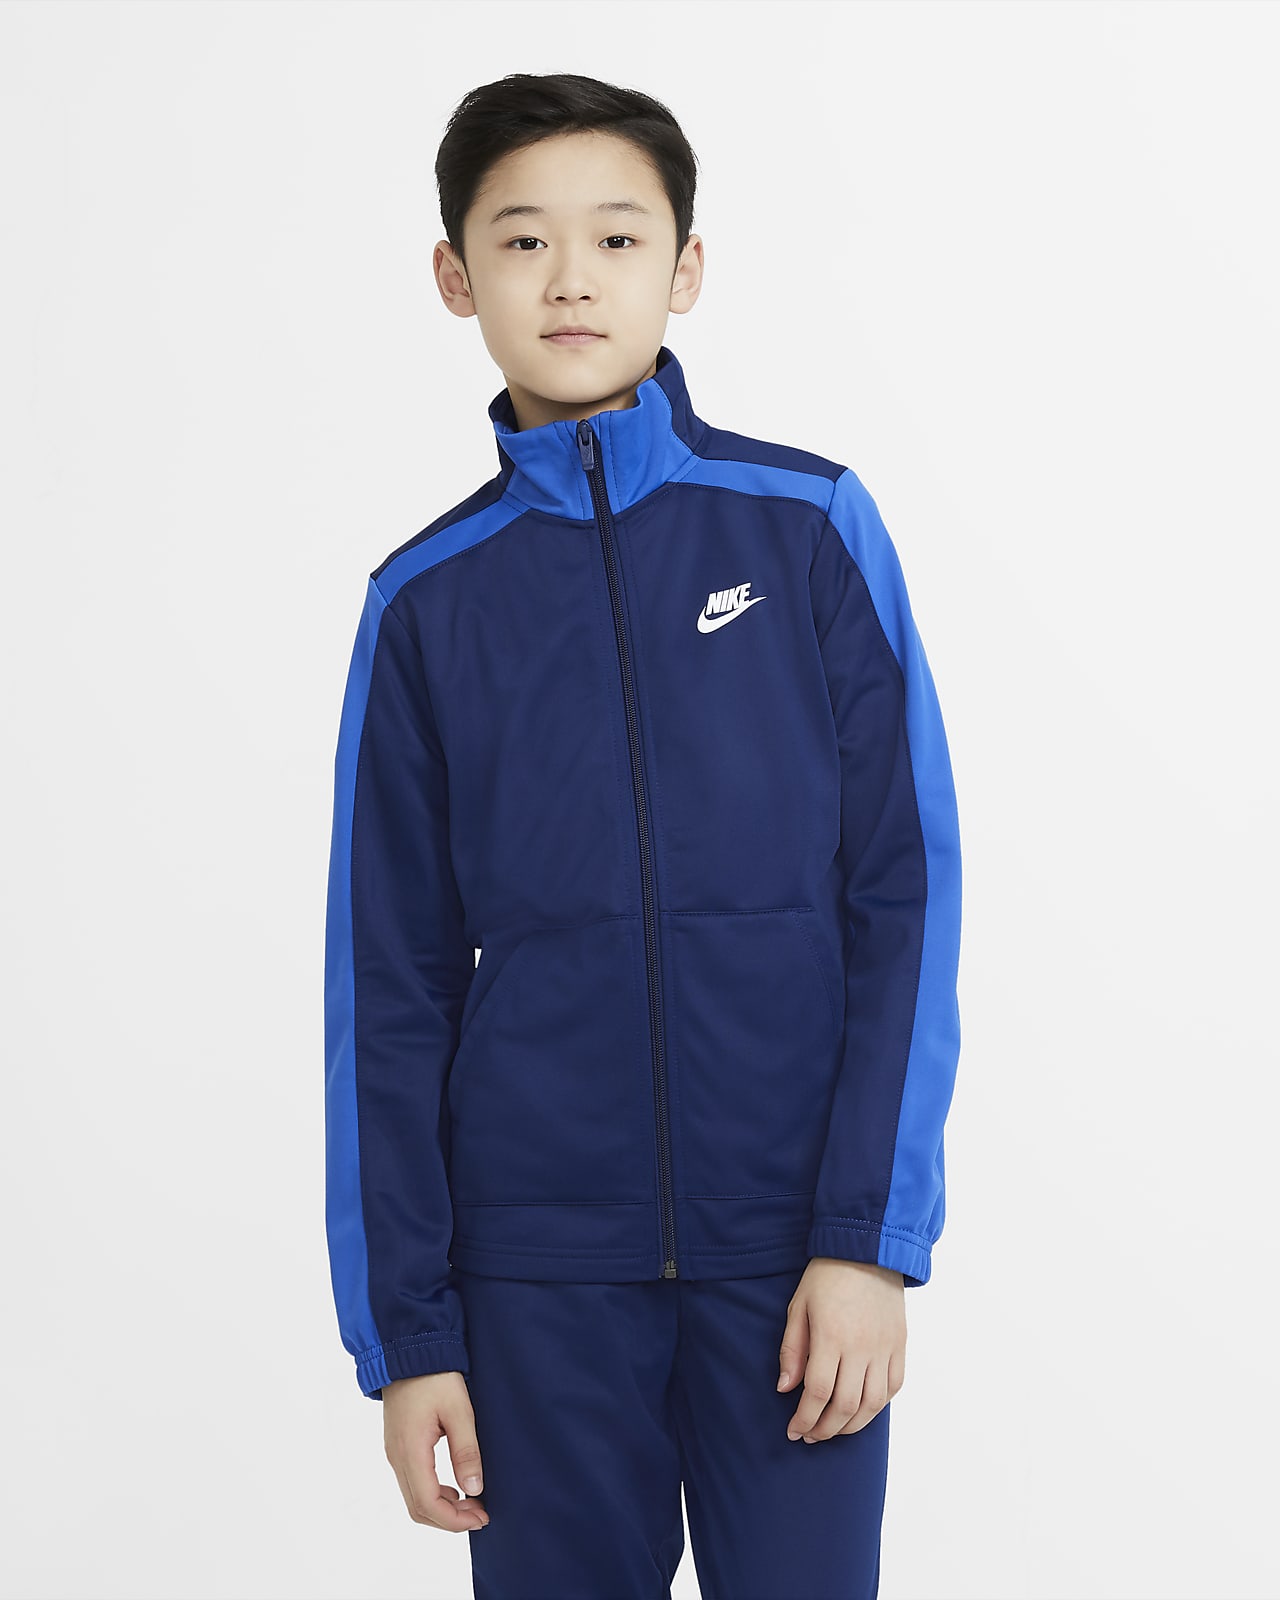 Nike Sportswear Older Kids' Tracksuit. Nike GB